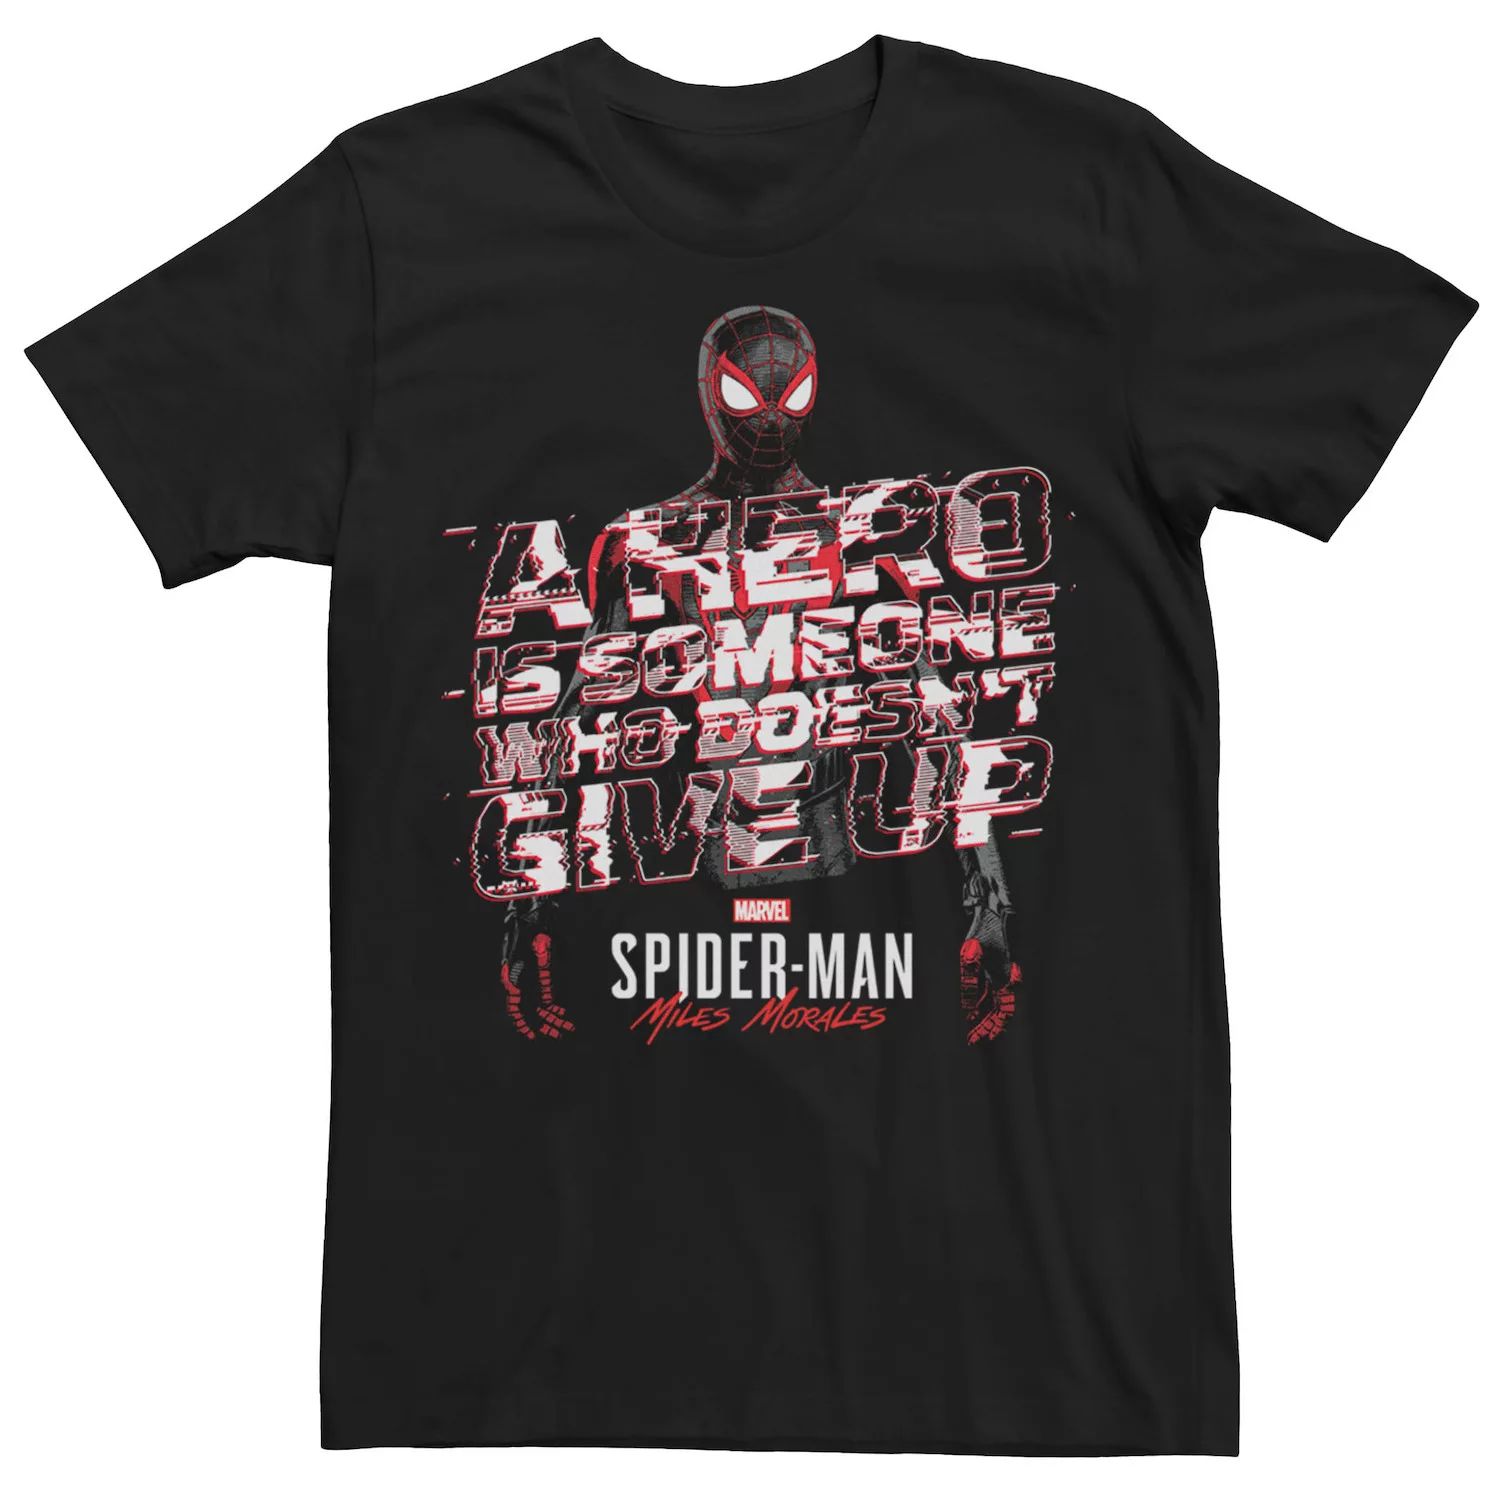 Мужская футболка с надписью «Человек-паук Майлз Моралес» Marvel ps4 игра sony marvel s человек паук майлз моралес